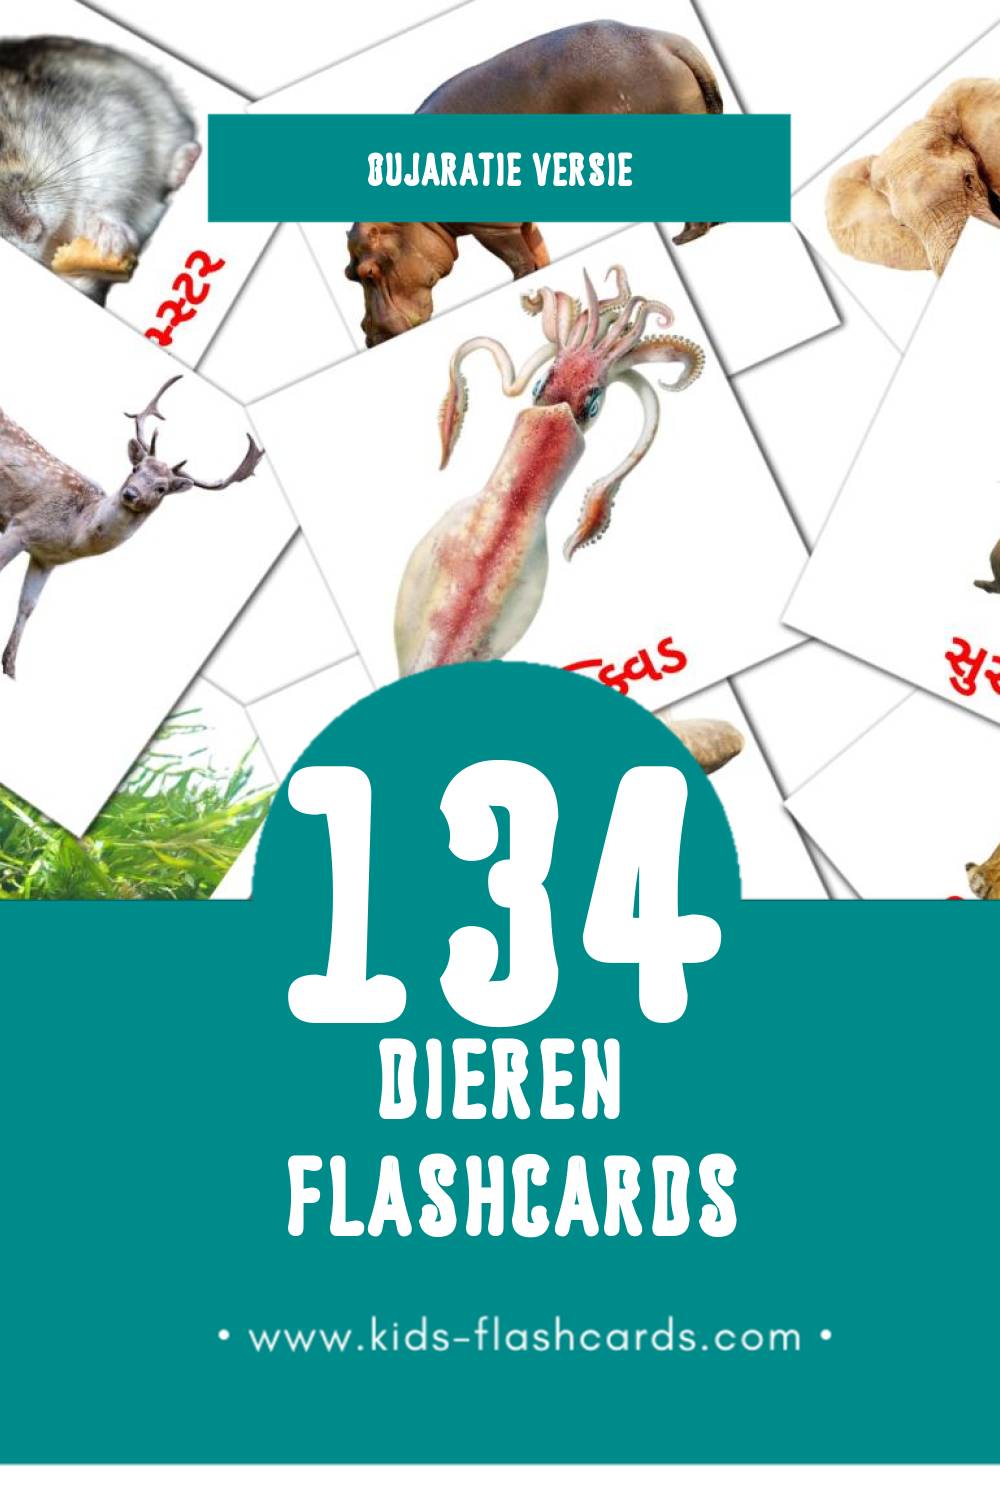 Visuele પ્રાણીઓ Flashcards voor Kleuters (134 kaarten in het Gujarati)